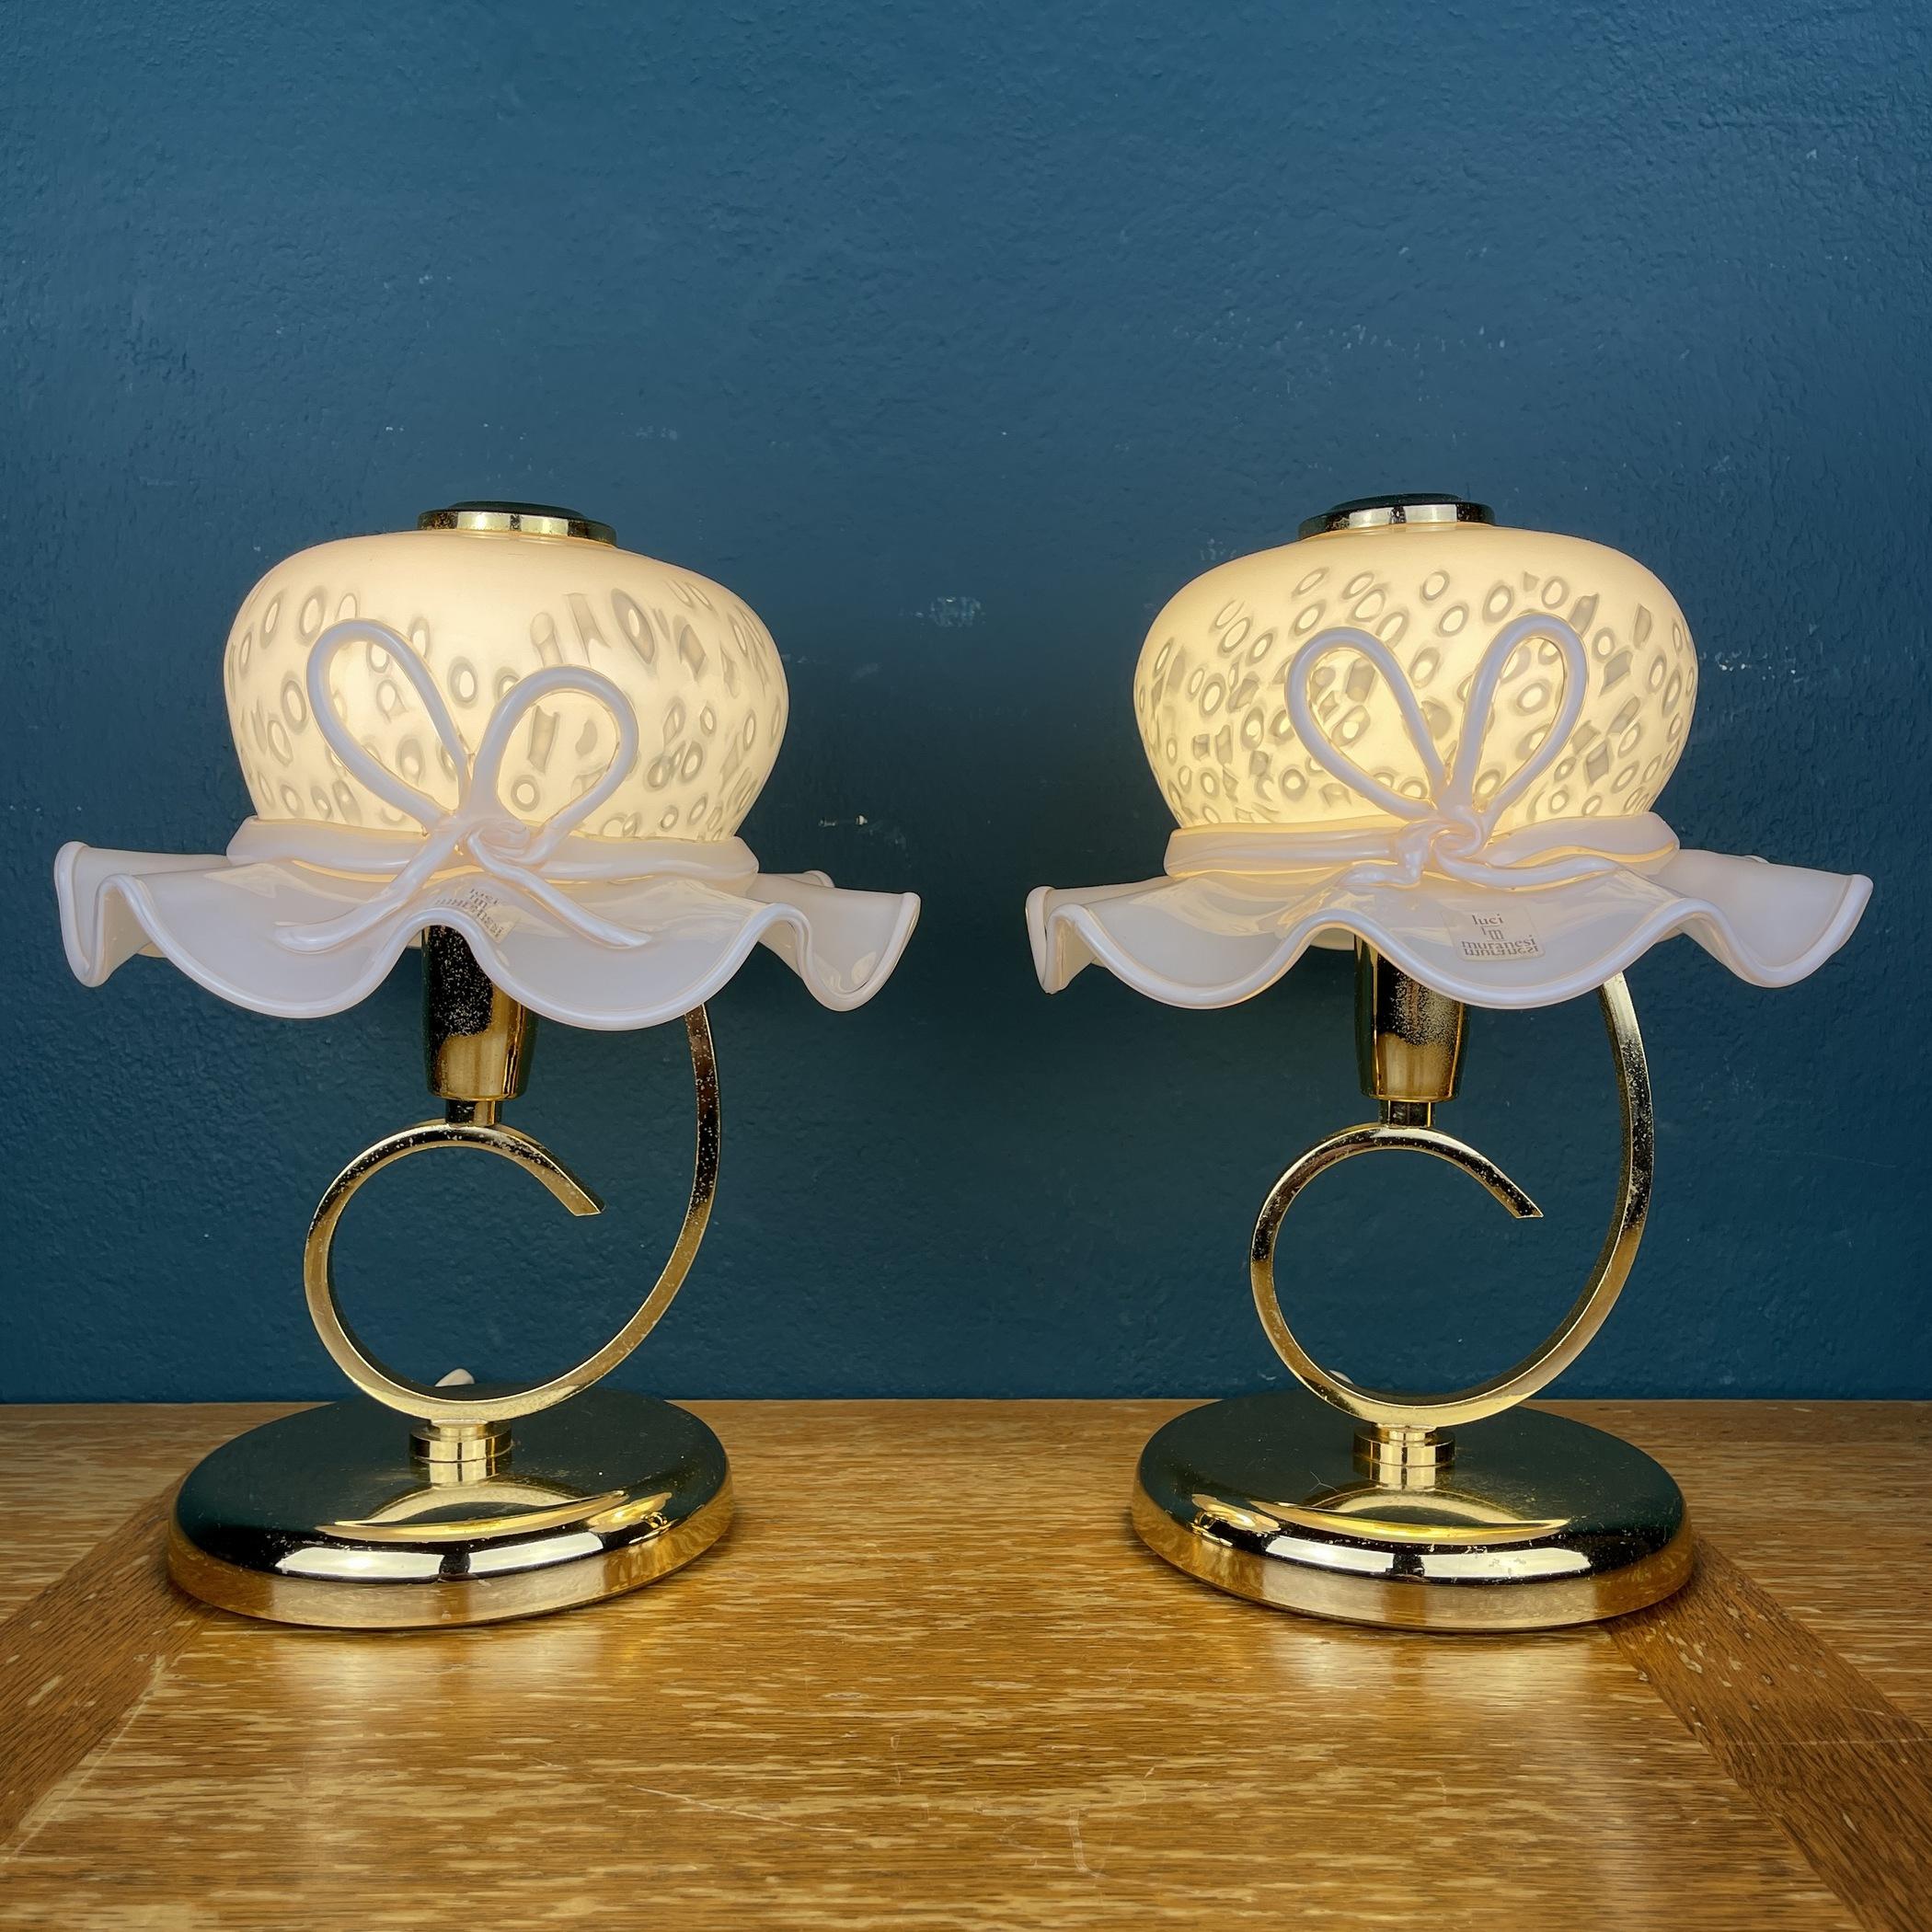 Fantastique paire de 2 lampes de table en verre de Murano rose en forme de chapeau de femme. Fabriqué en Italie dans les années 1980 par Luci.
Abat-jour en verre de Murano rose, réalisé selon la technique 